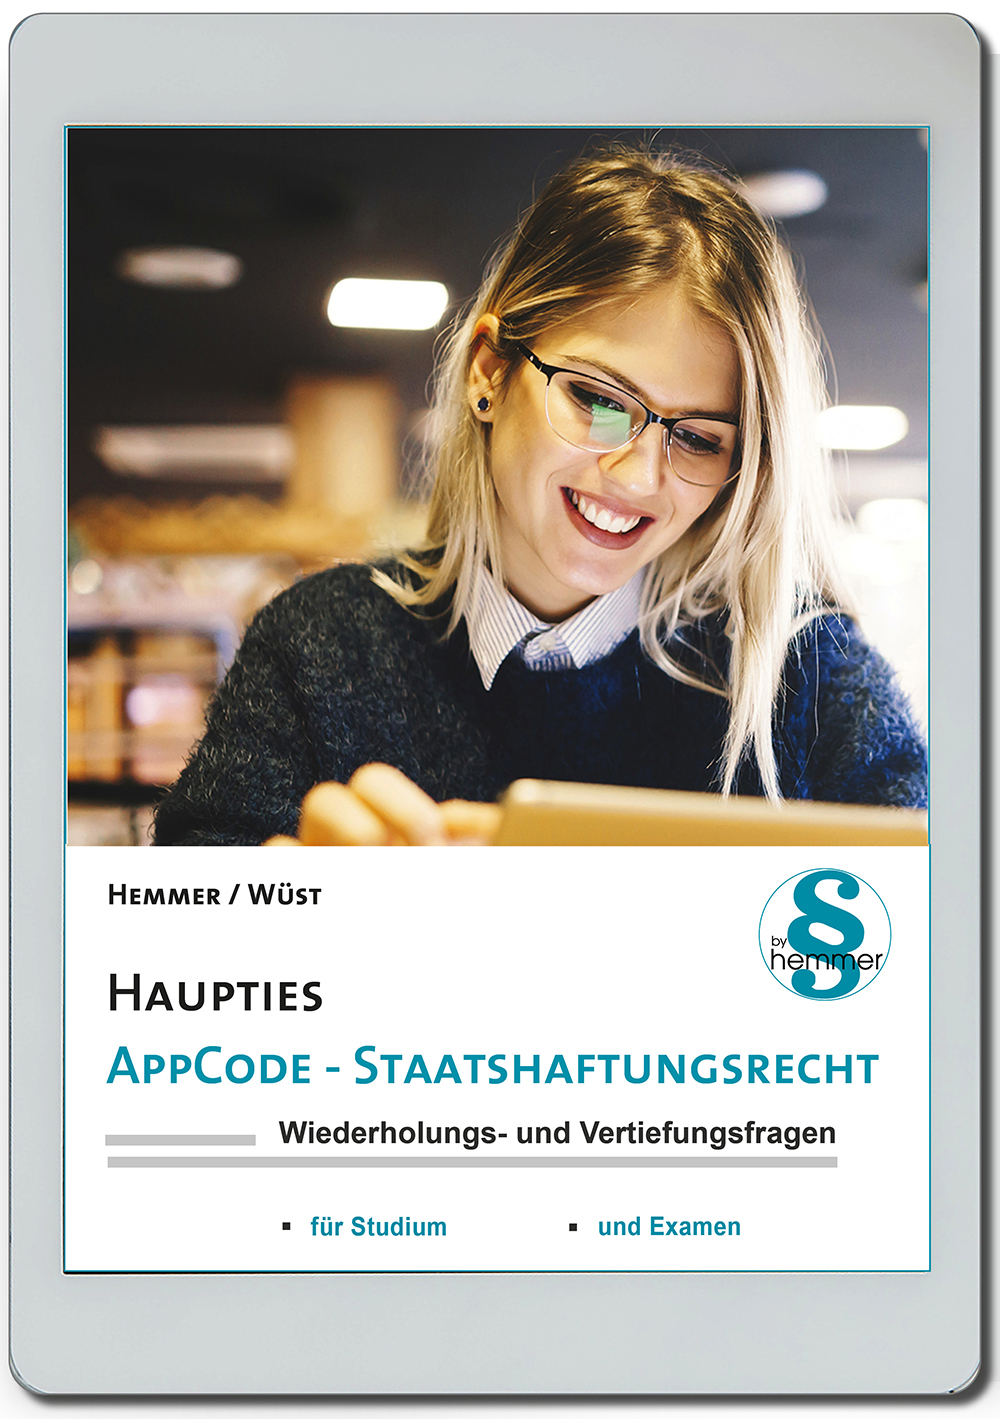 AppCode - haupties - Staatshaftungsrecht